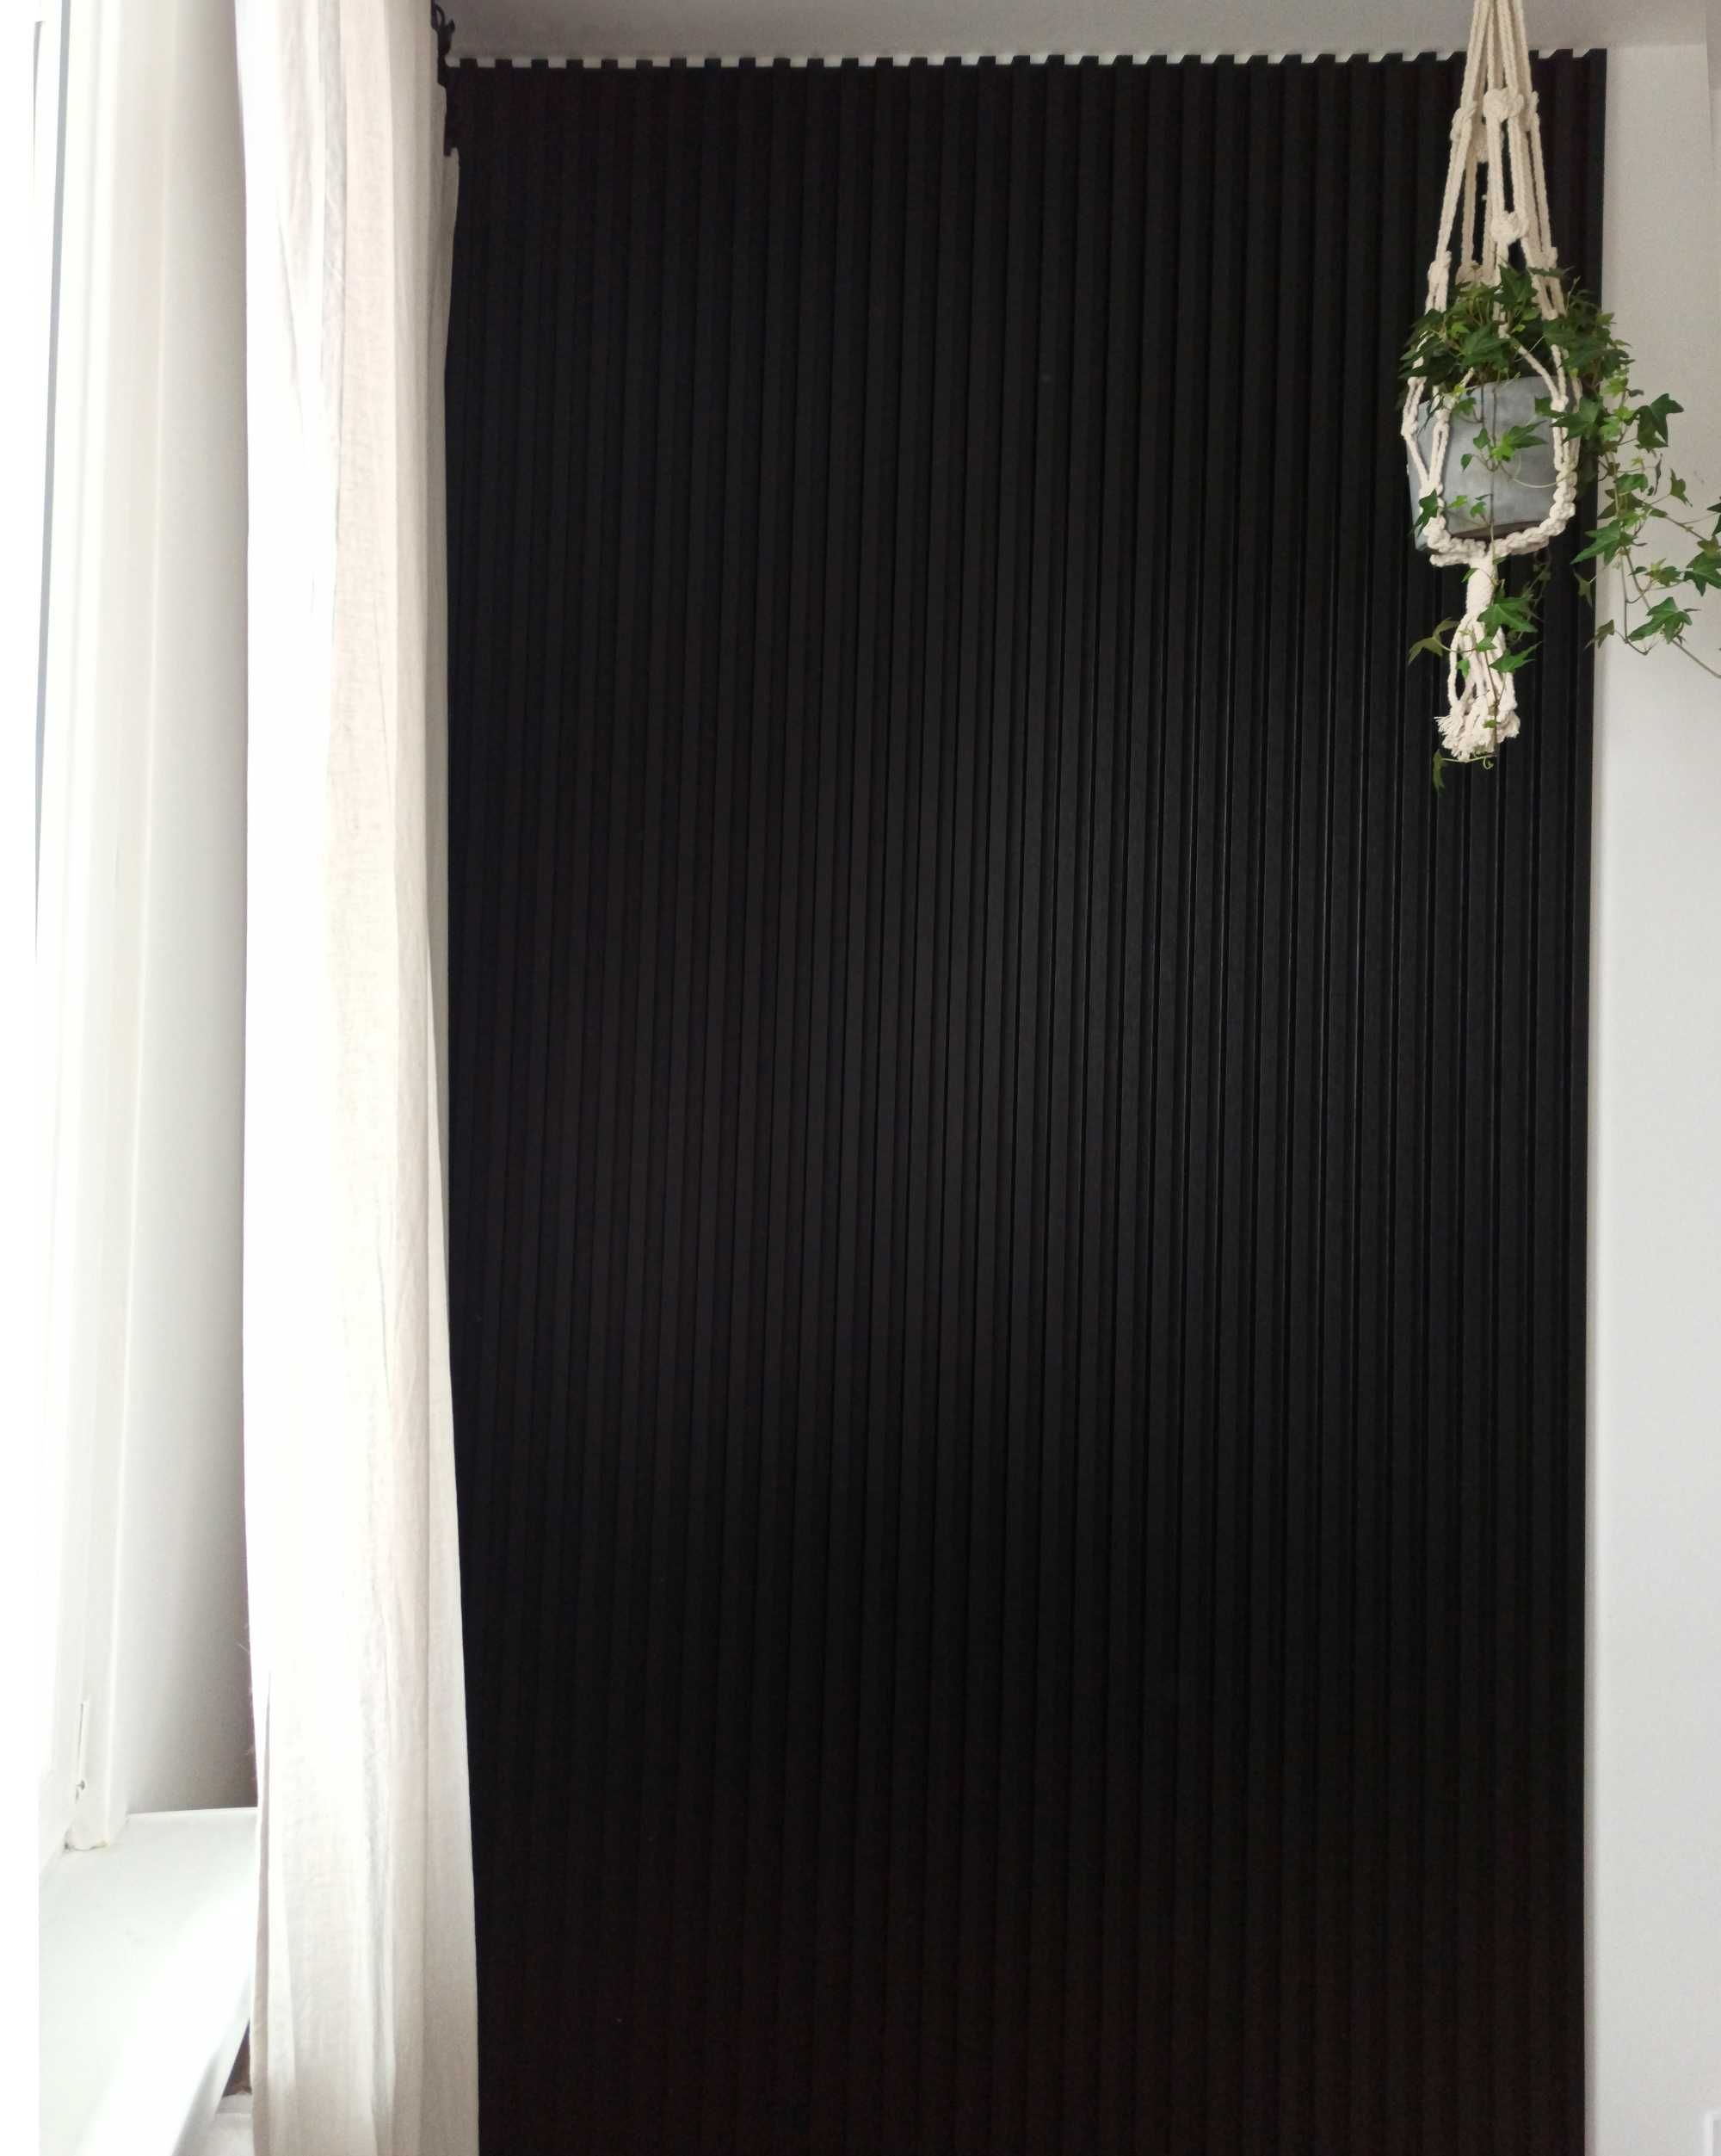 Lamele ścienne dekoracyjne czarne i białe 1 mb (dł. 2,7 m)